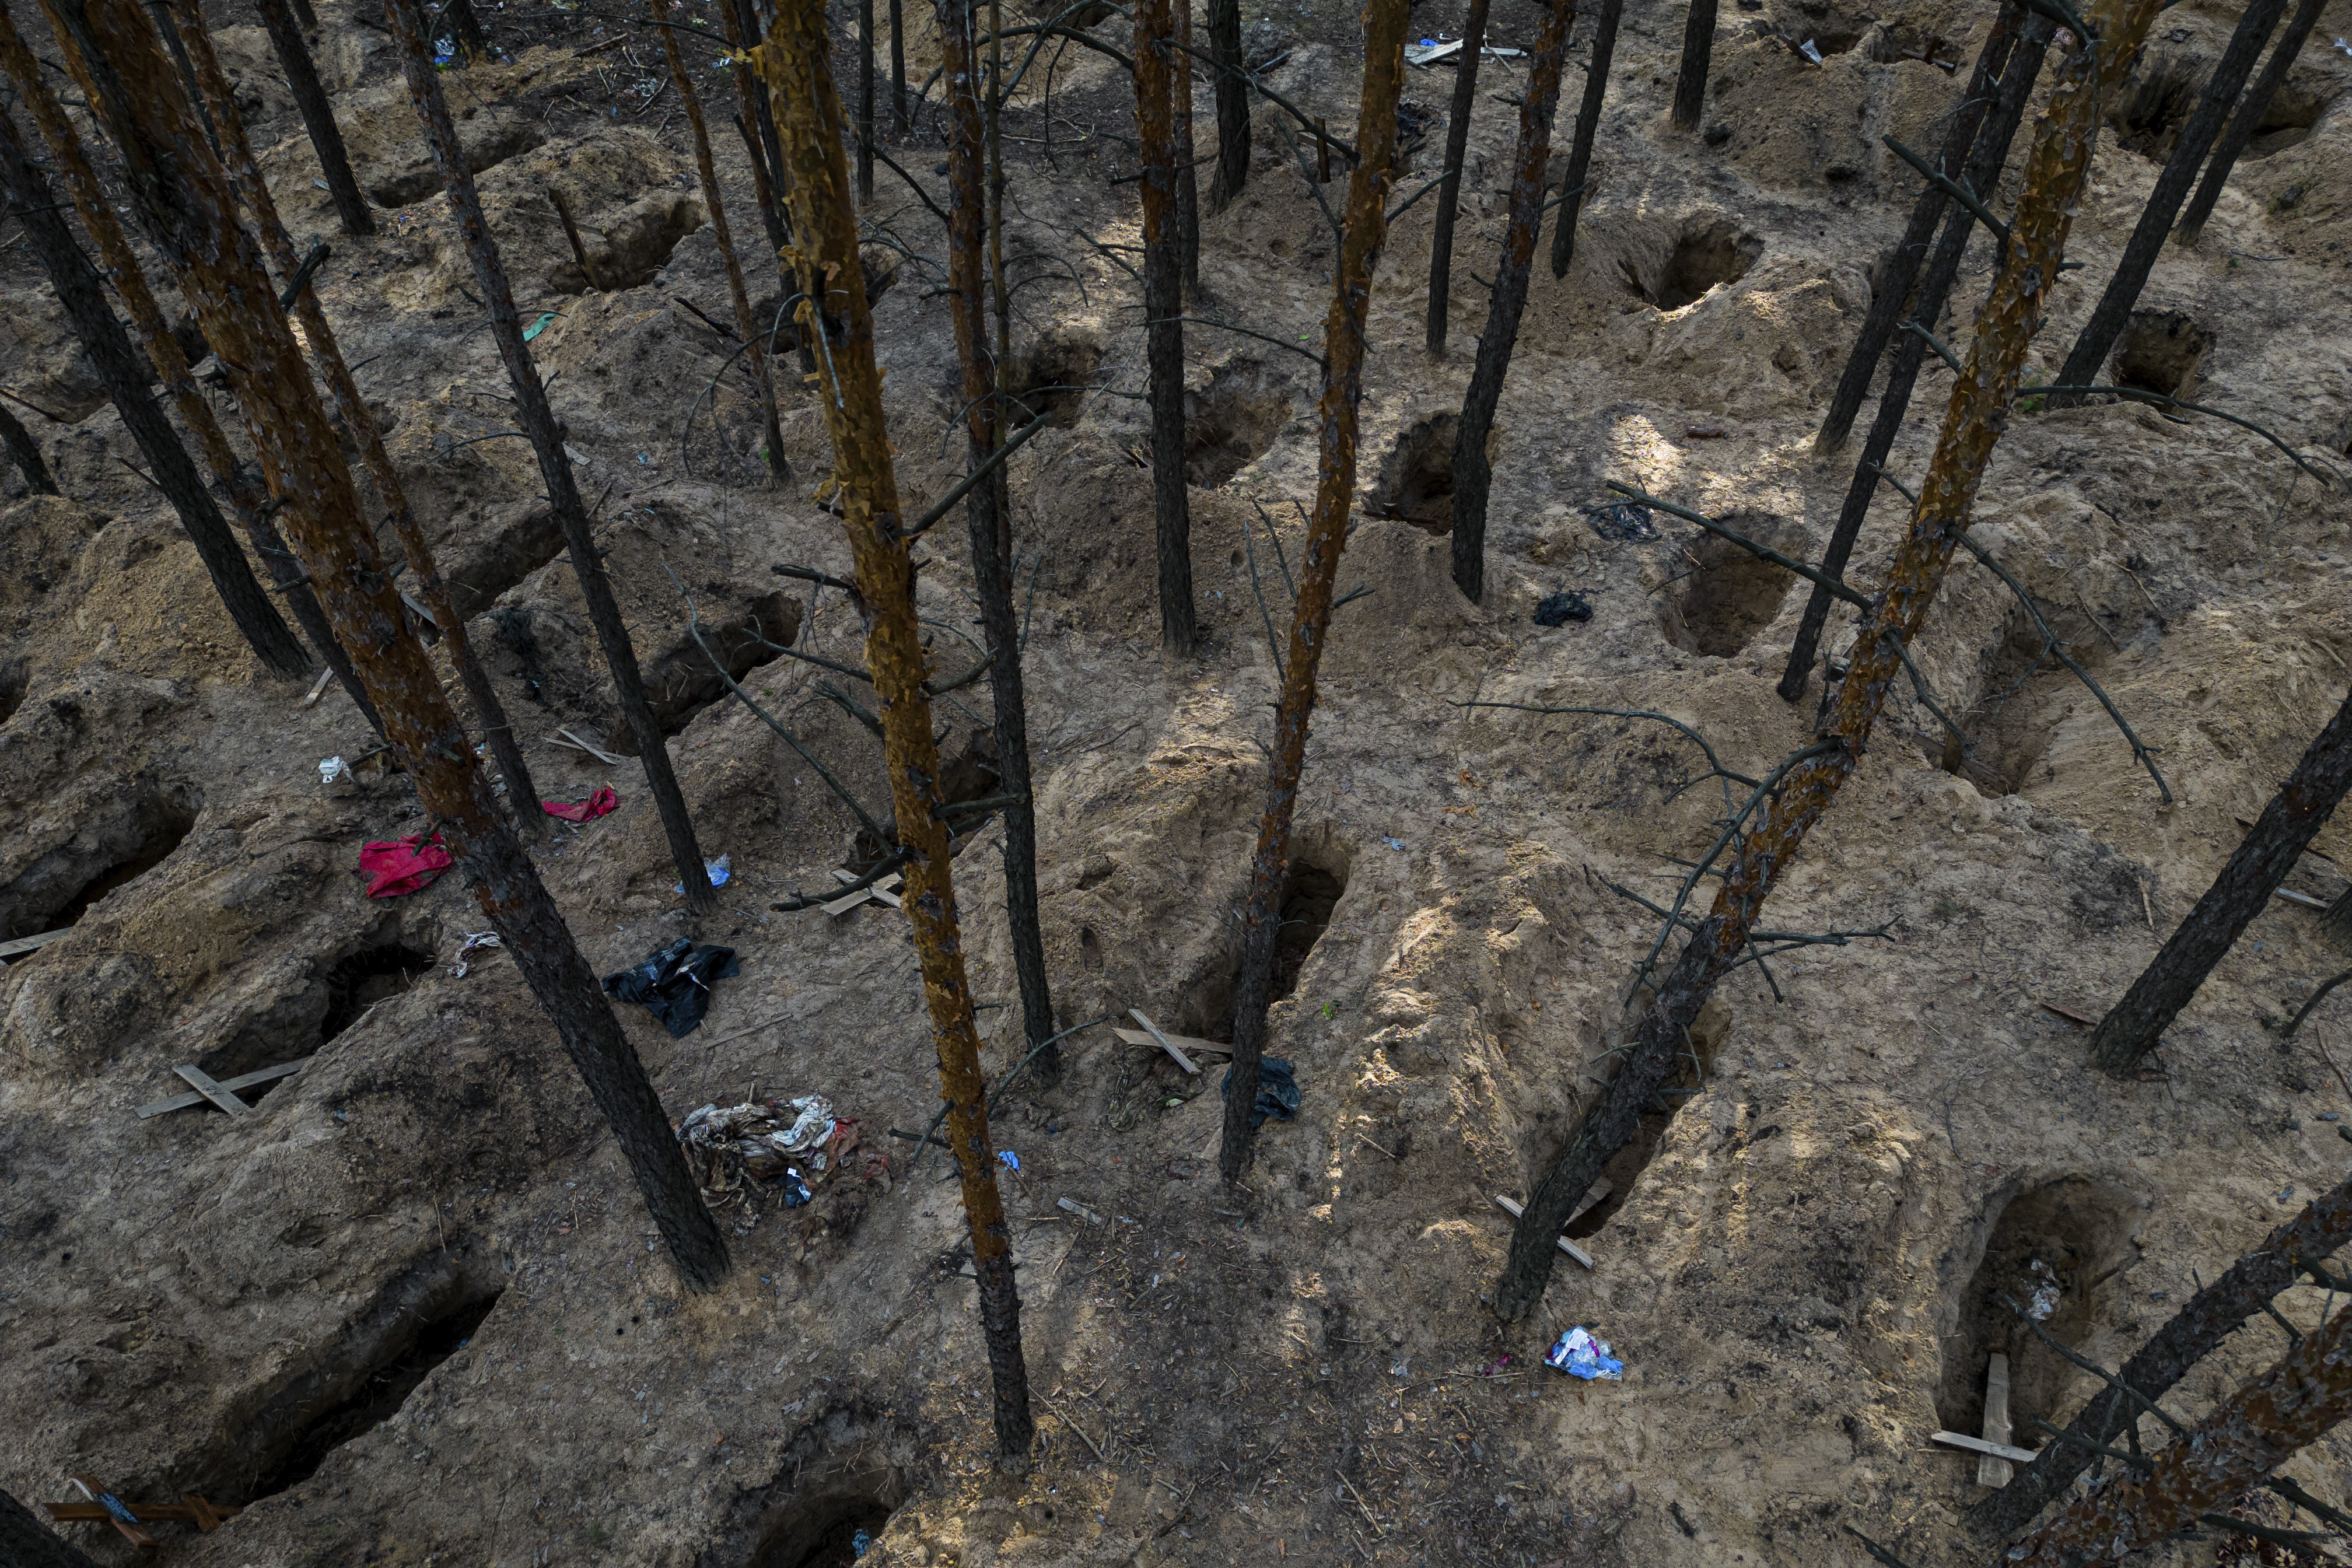 Tumbas no identificadas de civiles y soldados ucranianos son exhumadas en un cementerio en la recién retomada zona de Izium, Ucrania, el lunes 19 de septiembre de 2022. (AP Foto/Evgeniy Maloletka)